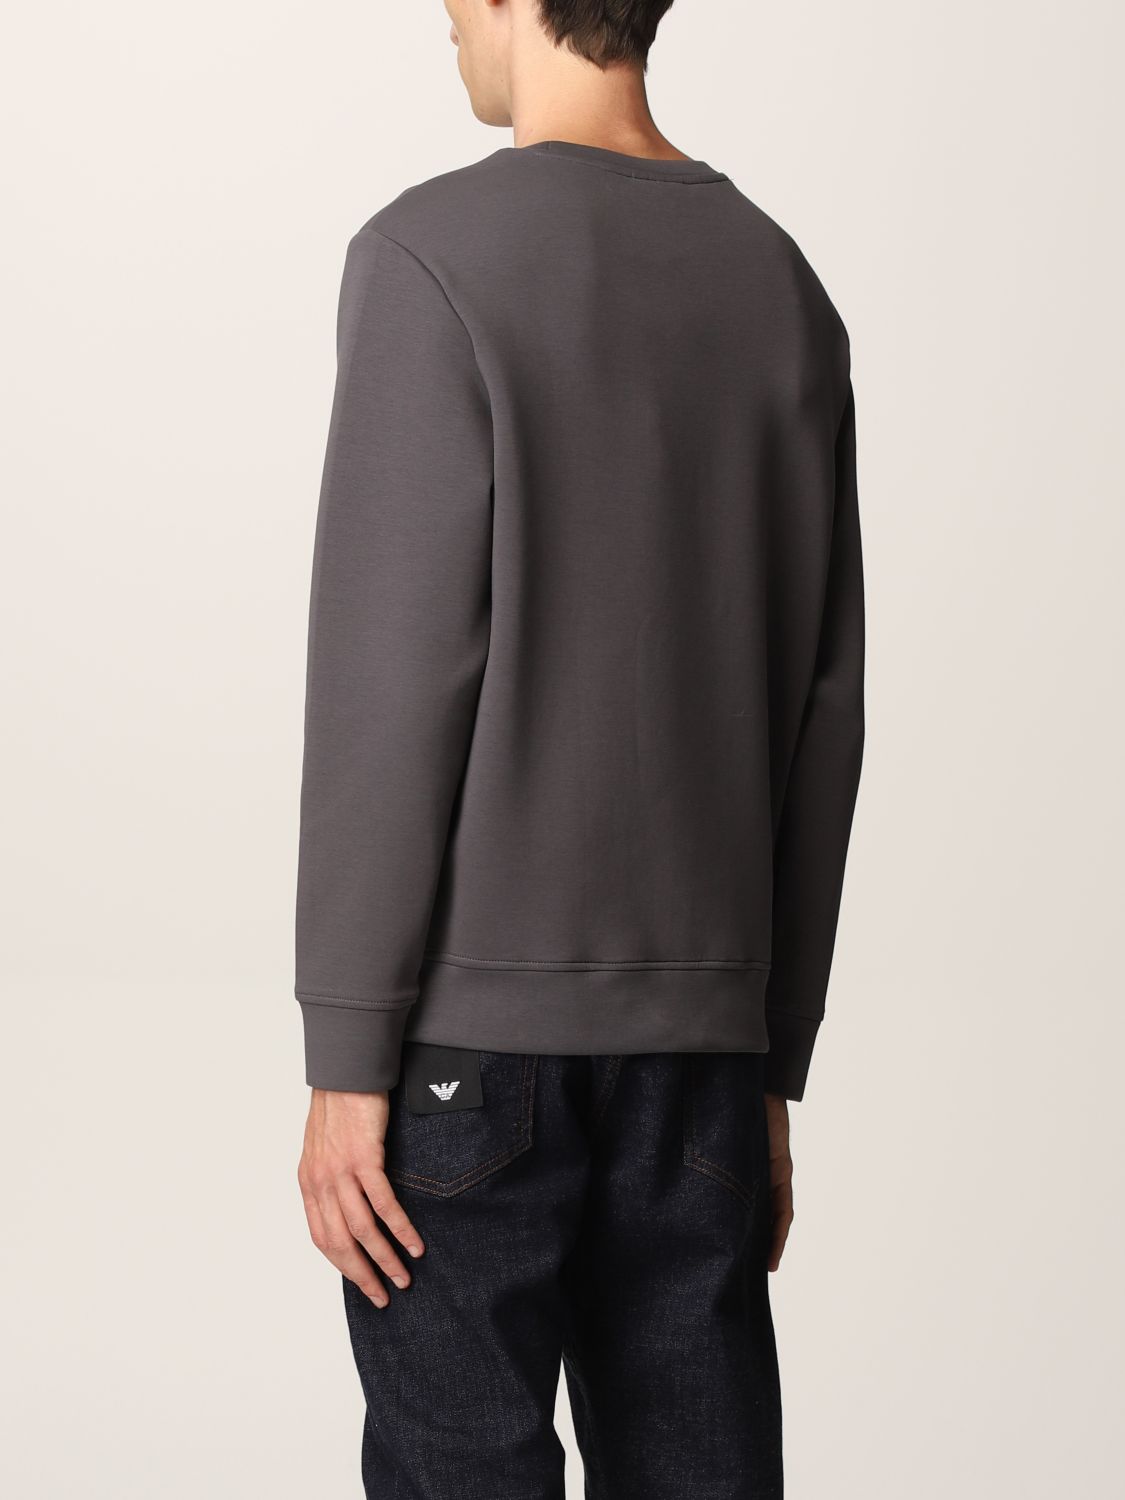 Sweatshirt Emporio Armani: Emporio Armani jumper in cotton blend with maxi logo grey 2